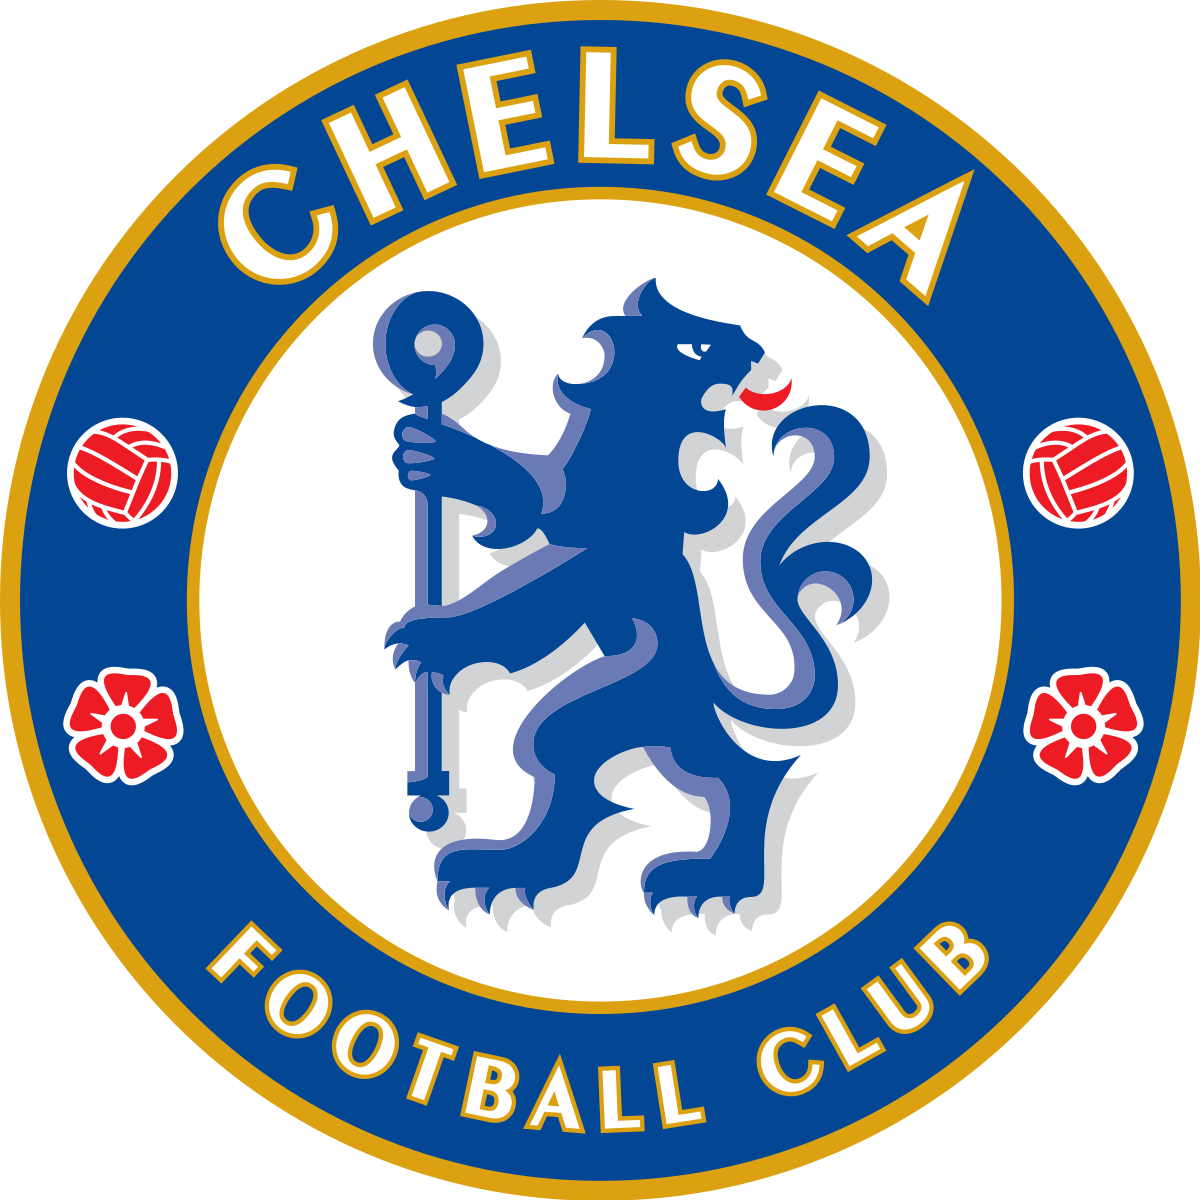 Tổng hợp hình ảnh câu lạc bộ Chelsea đẹp nhất  Chelsea wallpapers Chelsea  football club wallpapers Chelsea